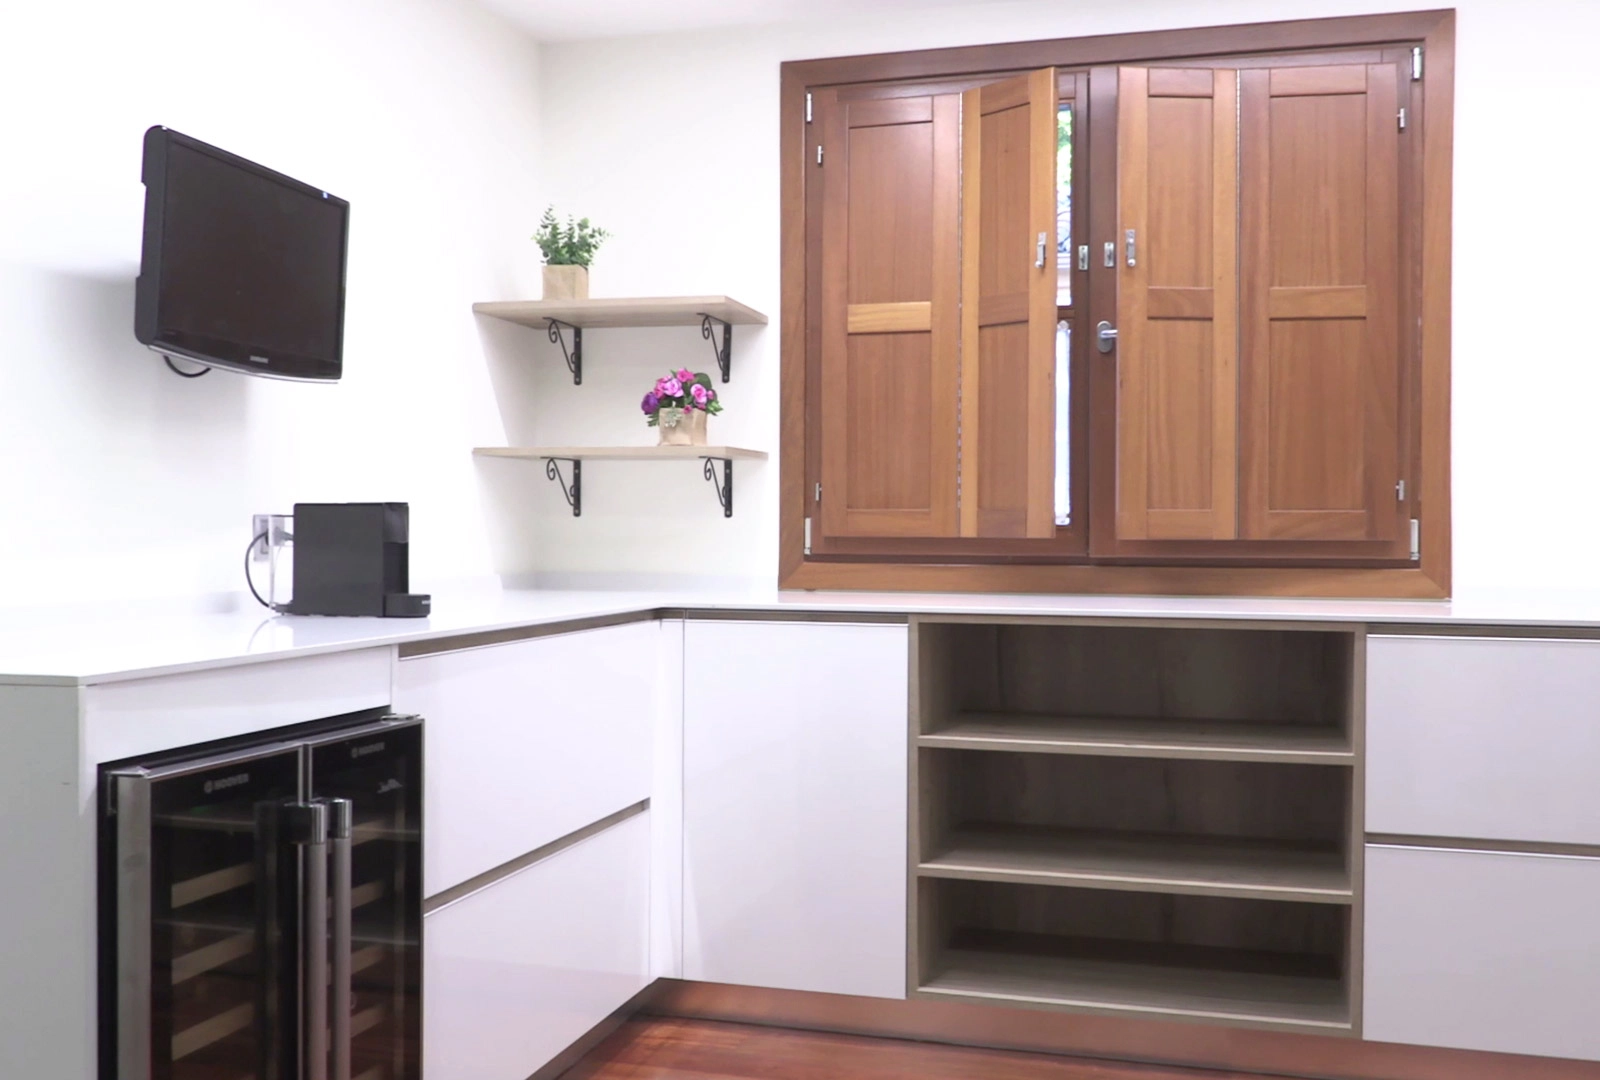 Zona de office contigua a la cocina con muebles en forma de ele en color blanco con detalles en madera, con vinoteca, TV y estantes